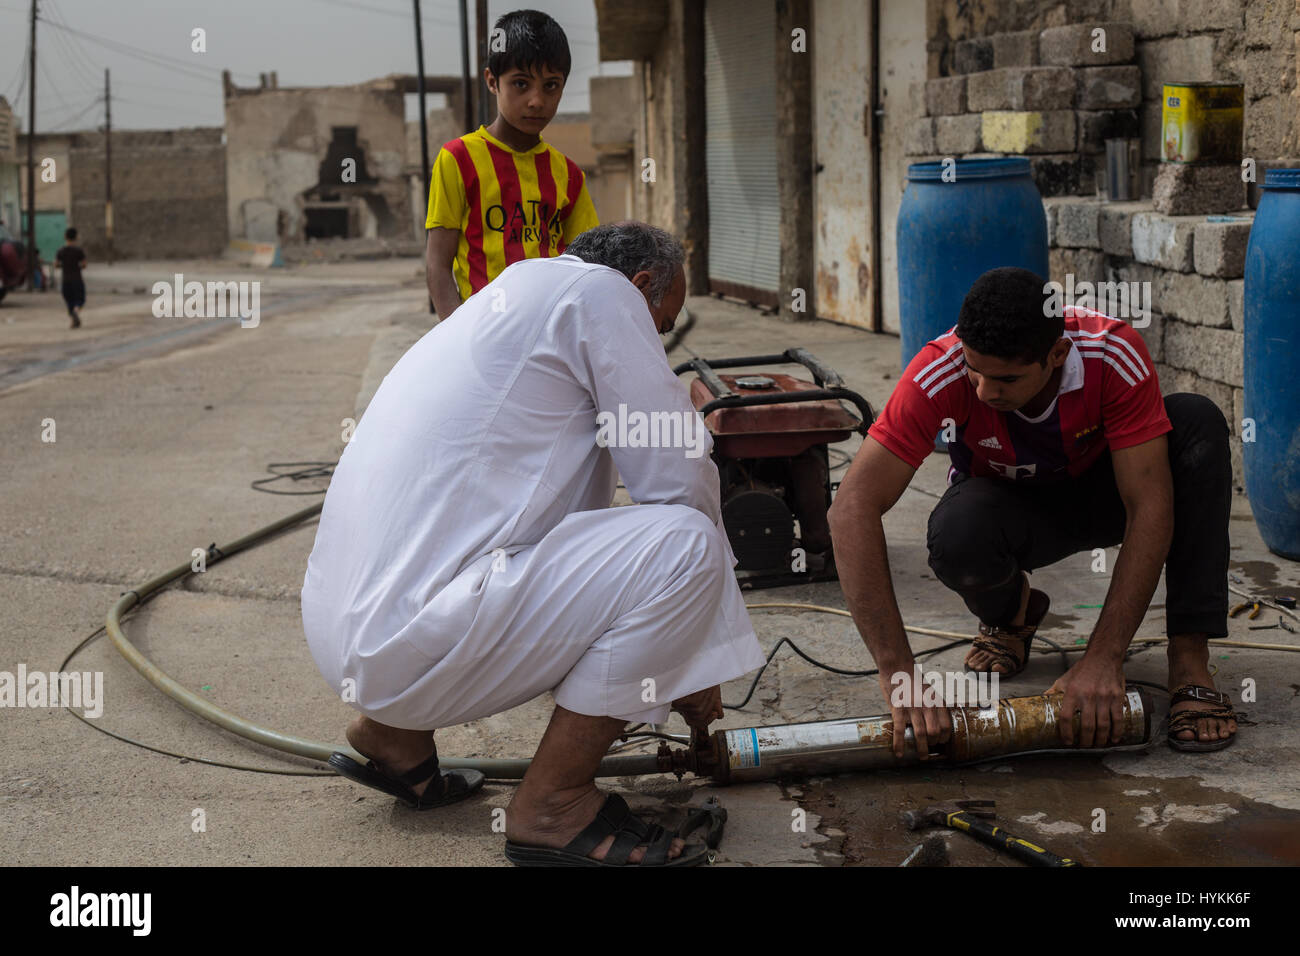 MOSUL, IRAQ: un padre e figlio sta tentando di fare un sistema idraulico di pompaggio acqua per l'estrazione di acqua fresca da pozzi sotterranei, il recentemente liberato villaggi si trovano di fronte a crisi umanitaria con la mancanza di acqua potabile e di cibo. Immagini che mostrano curdo forze militari di difesa contro lo Stato islamico nei pressi di Mosul, Iraq sono state acquisite. La serie di scatti anche mostrare ciò che la vita è diventata per i civili di appena liberato villaggi vicino alla città che è ancora sotto controllo è. Altre foto mostrano i volontari il trattamento di ferite che i rifugiati che sono riusciti a fuggire di Mosul. Queste foto sono state scattate Foto Stock